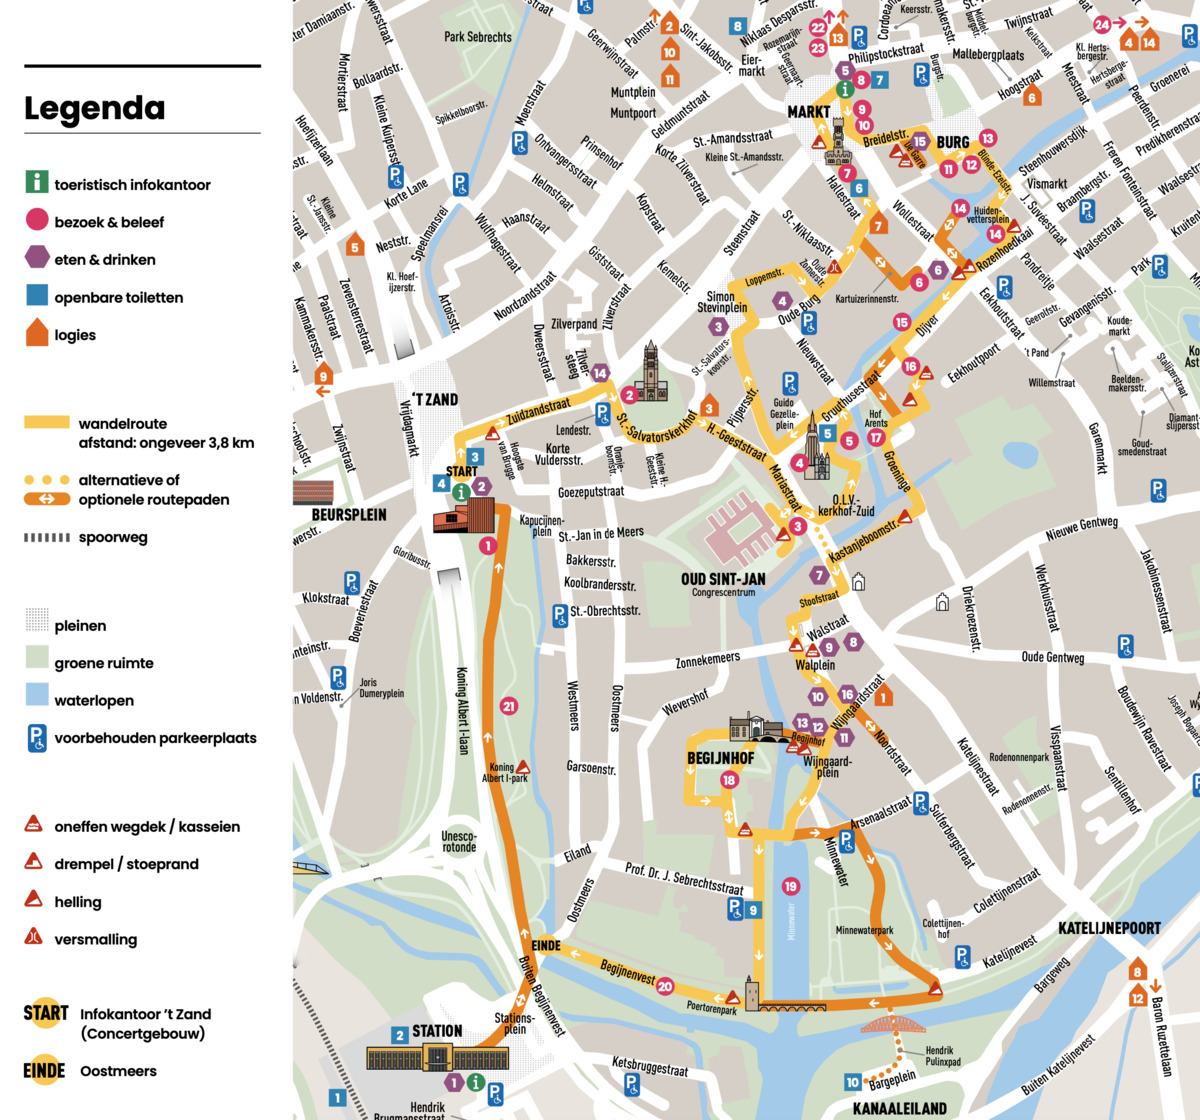 Kaart van Brugge met aangeduide wandelroute. De kaart is als volgt begrensd: Markt en Burg in het noorden, Koningin Astridpark in het oosten, treinstation en Kanaaleiland in het zuiden, Beursplein in het westen.